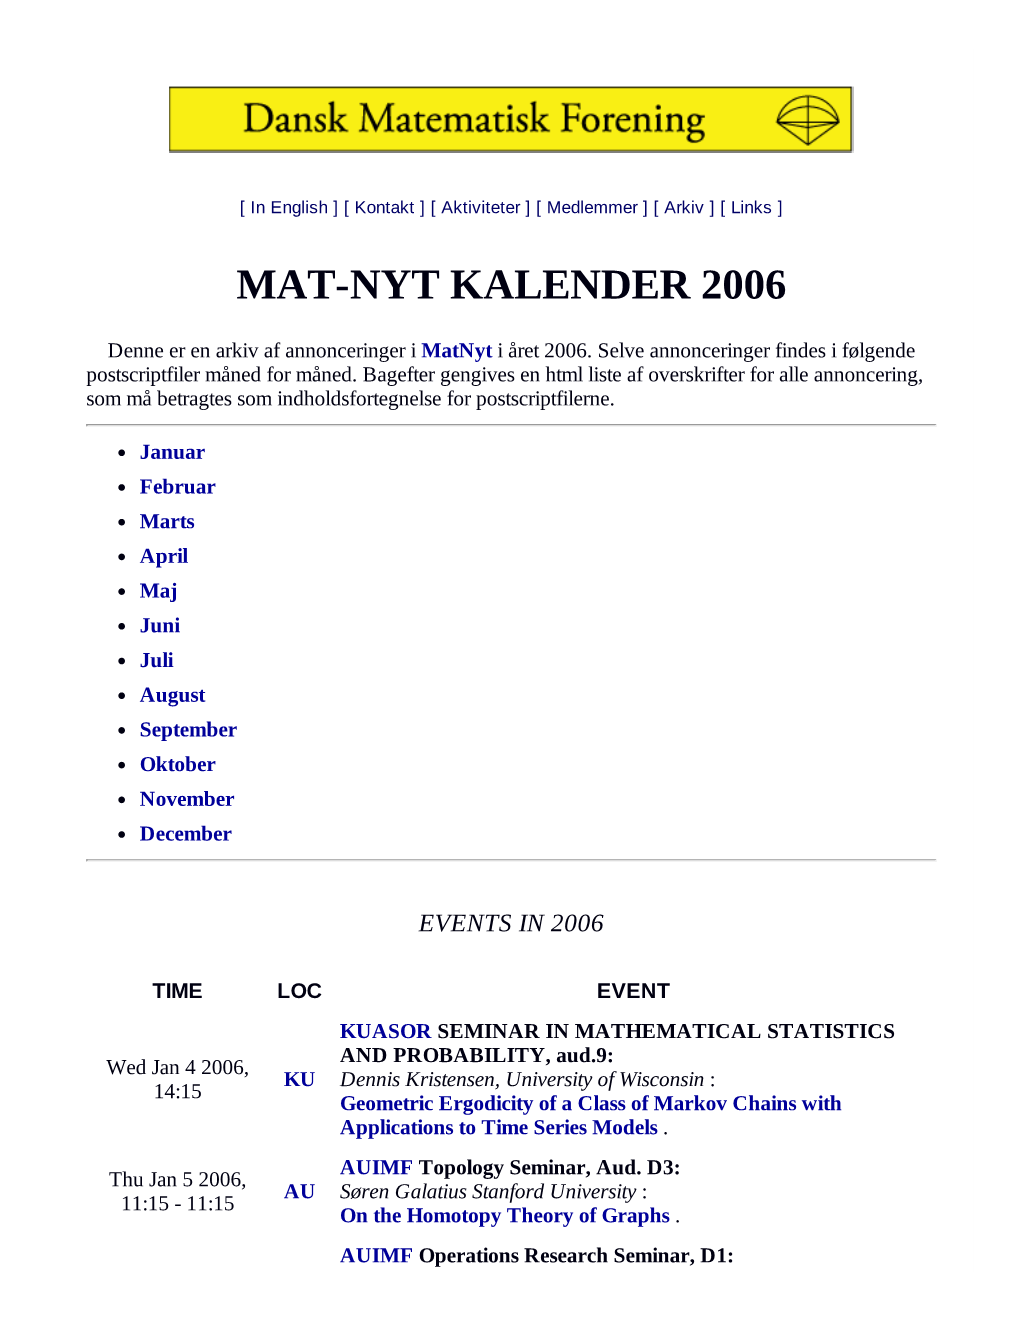 Matnyt Kalender 2006